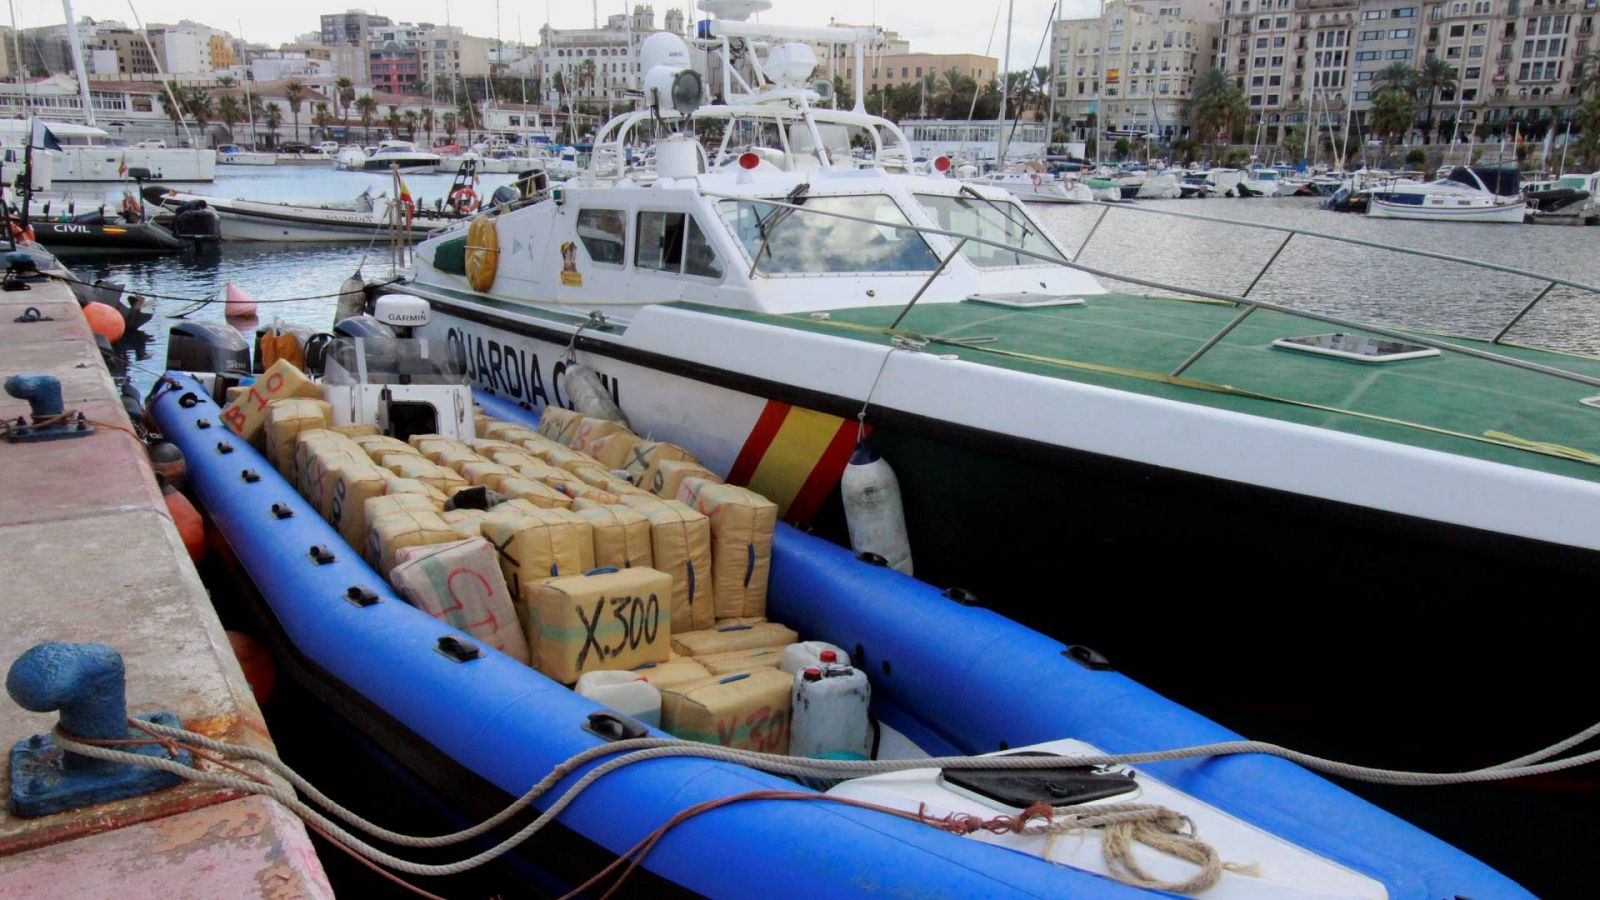 24 horas - La lucha contra el narcotráfico en el Campo de Gibraltar - Esacuchar ahora